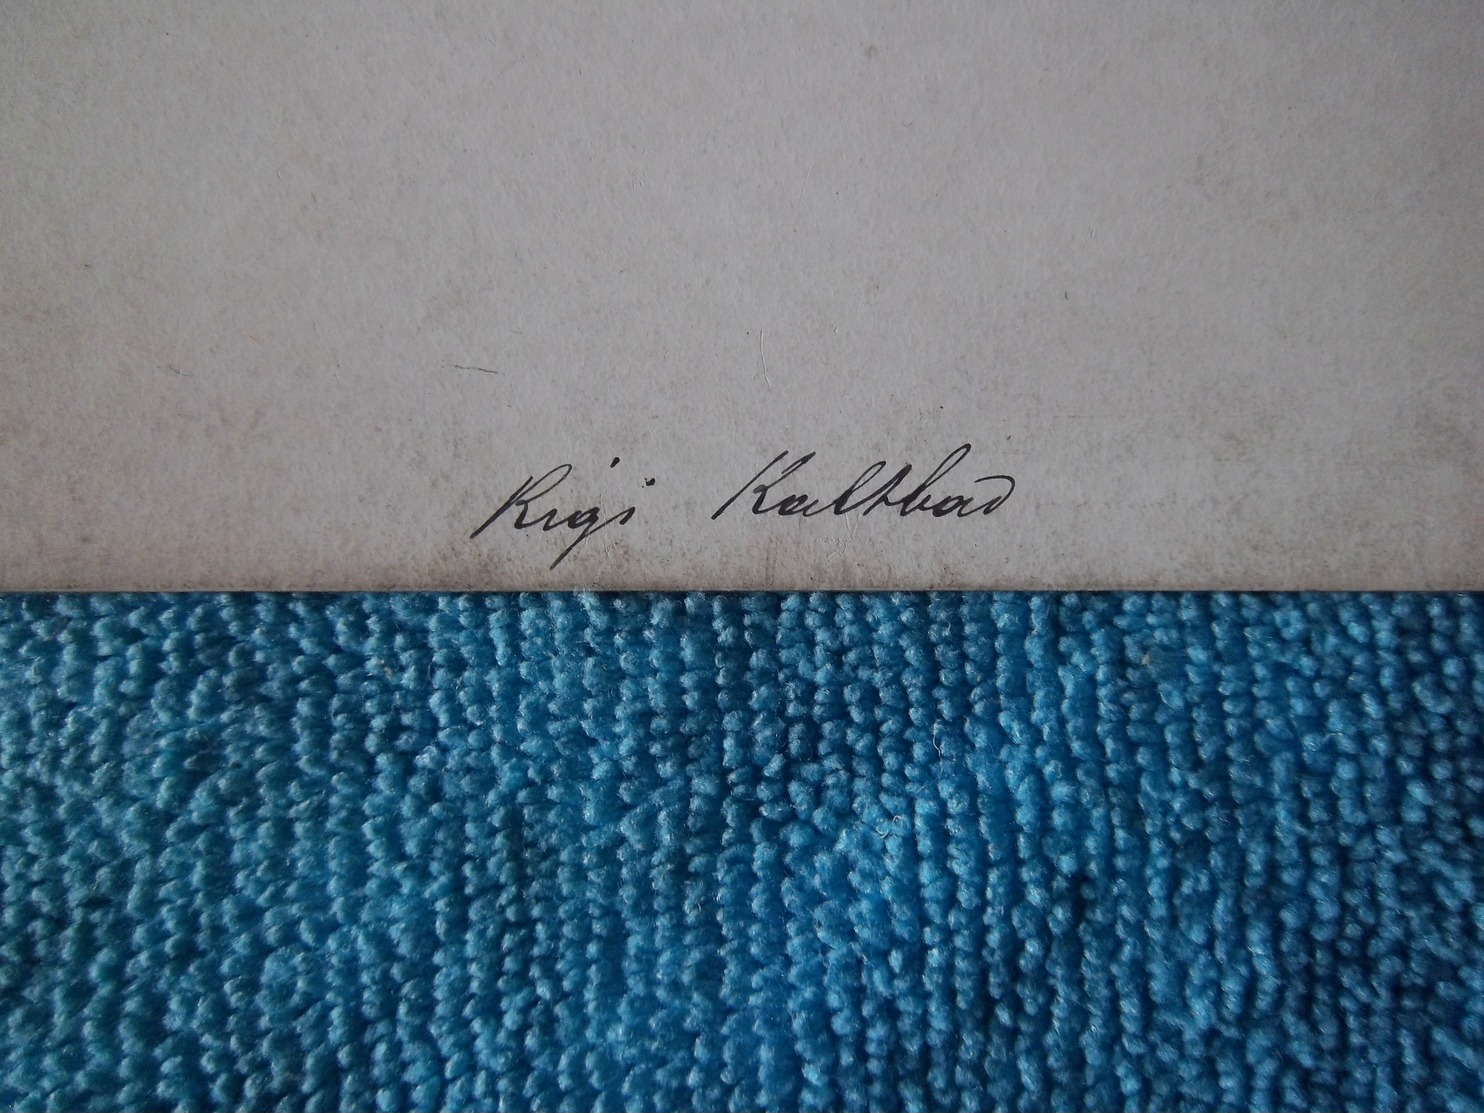 Rigi,kaltbad Photo Cartonnée Vers 1862 Par Braun Et Compagnie - Anciennes (Av. 1900)